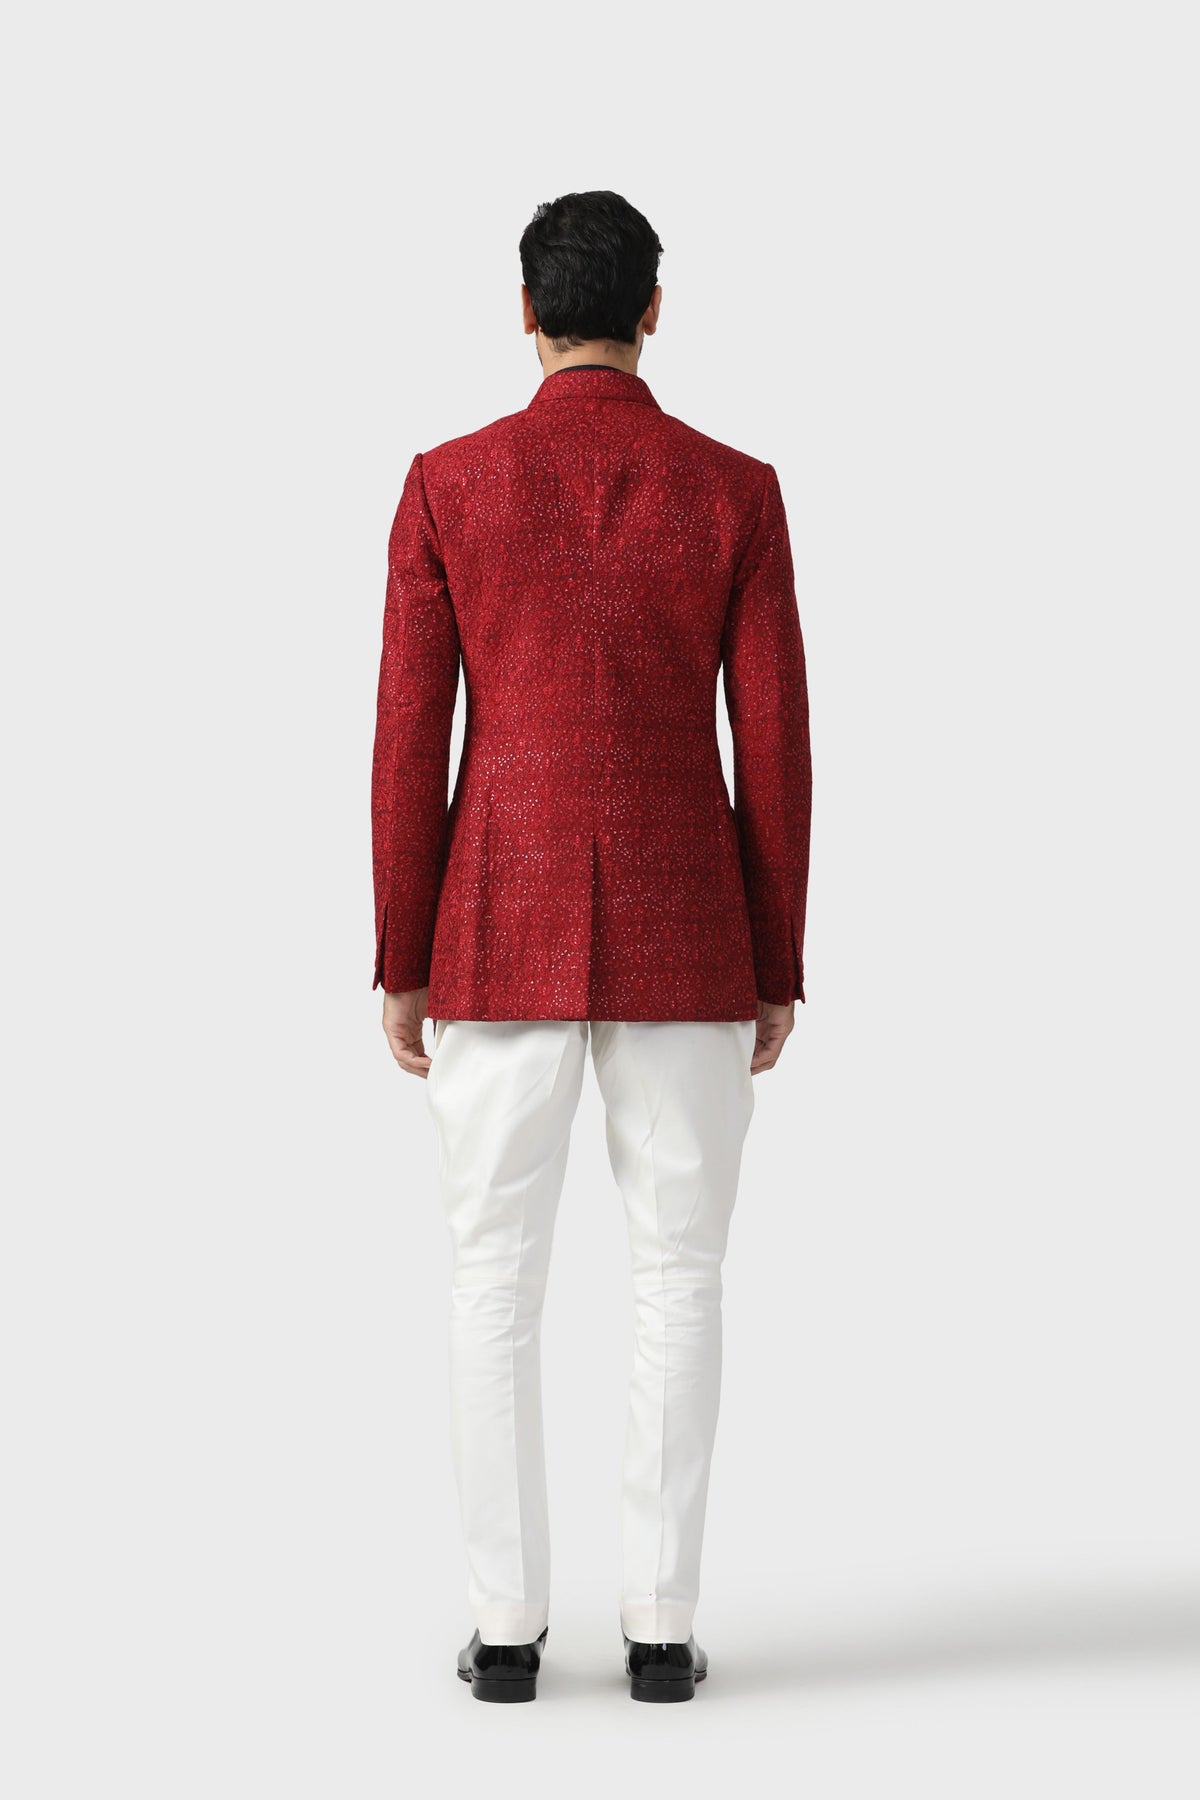 The Pompeiian Red Bandhgala Jacket